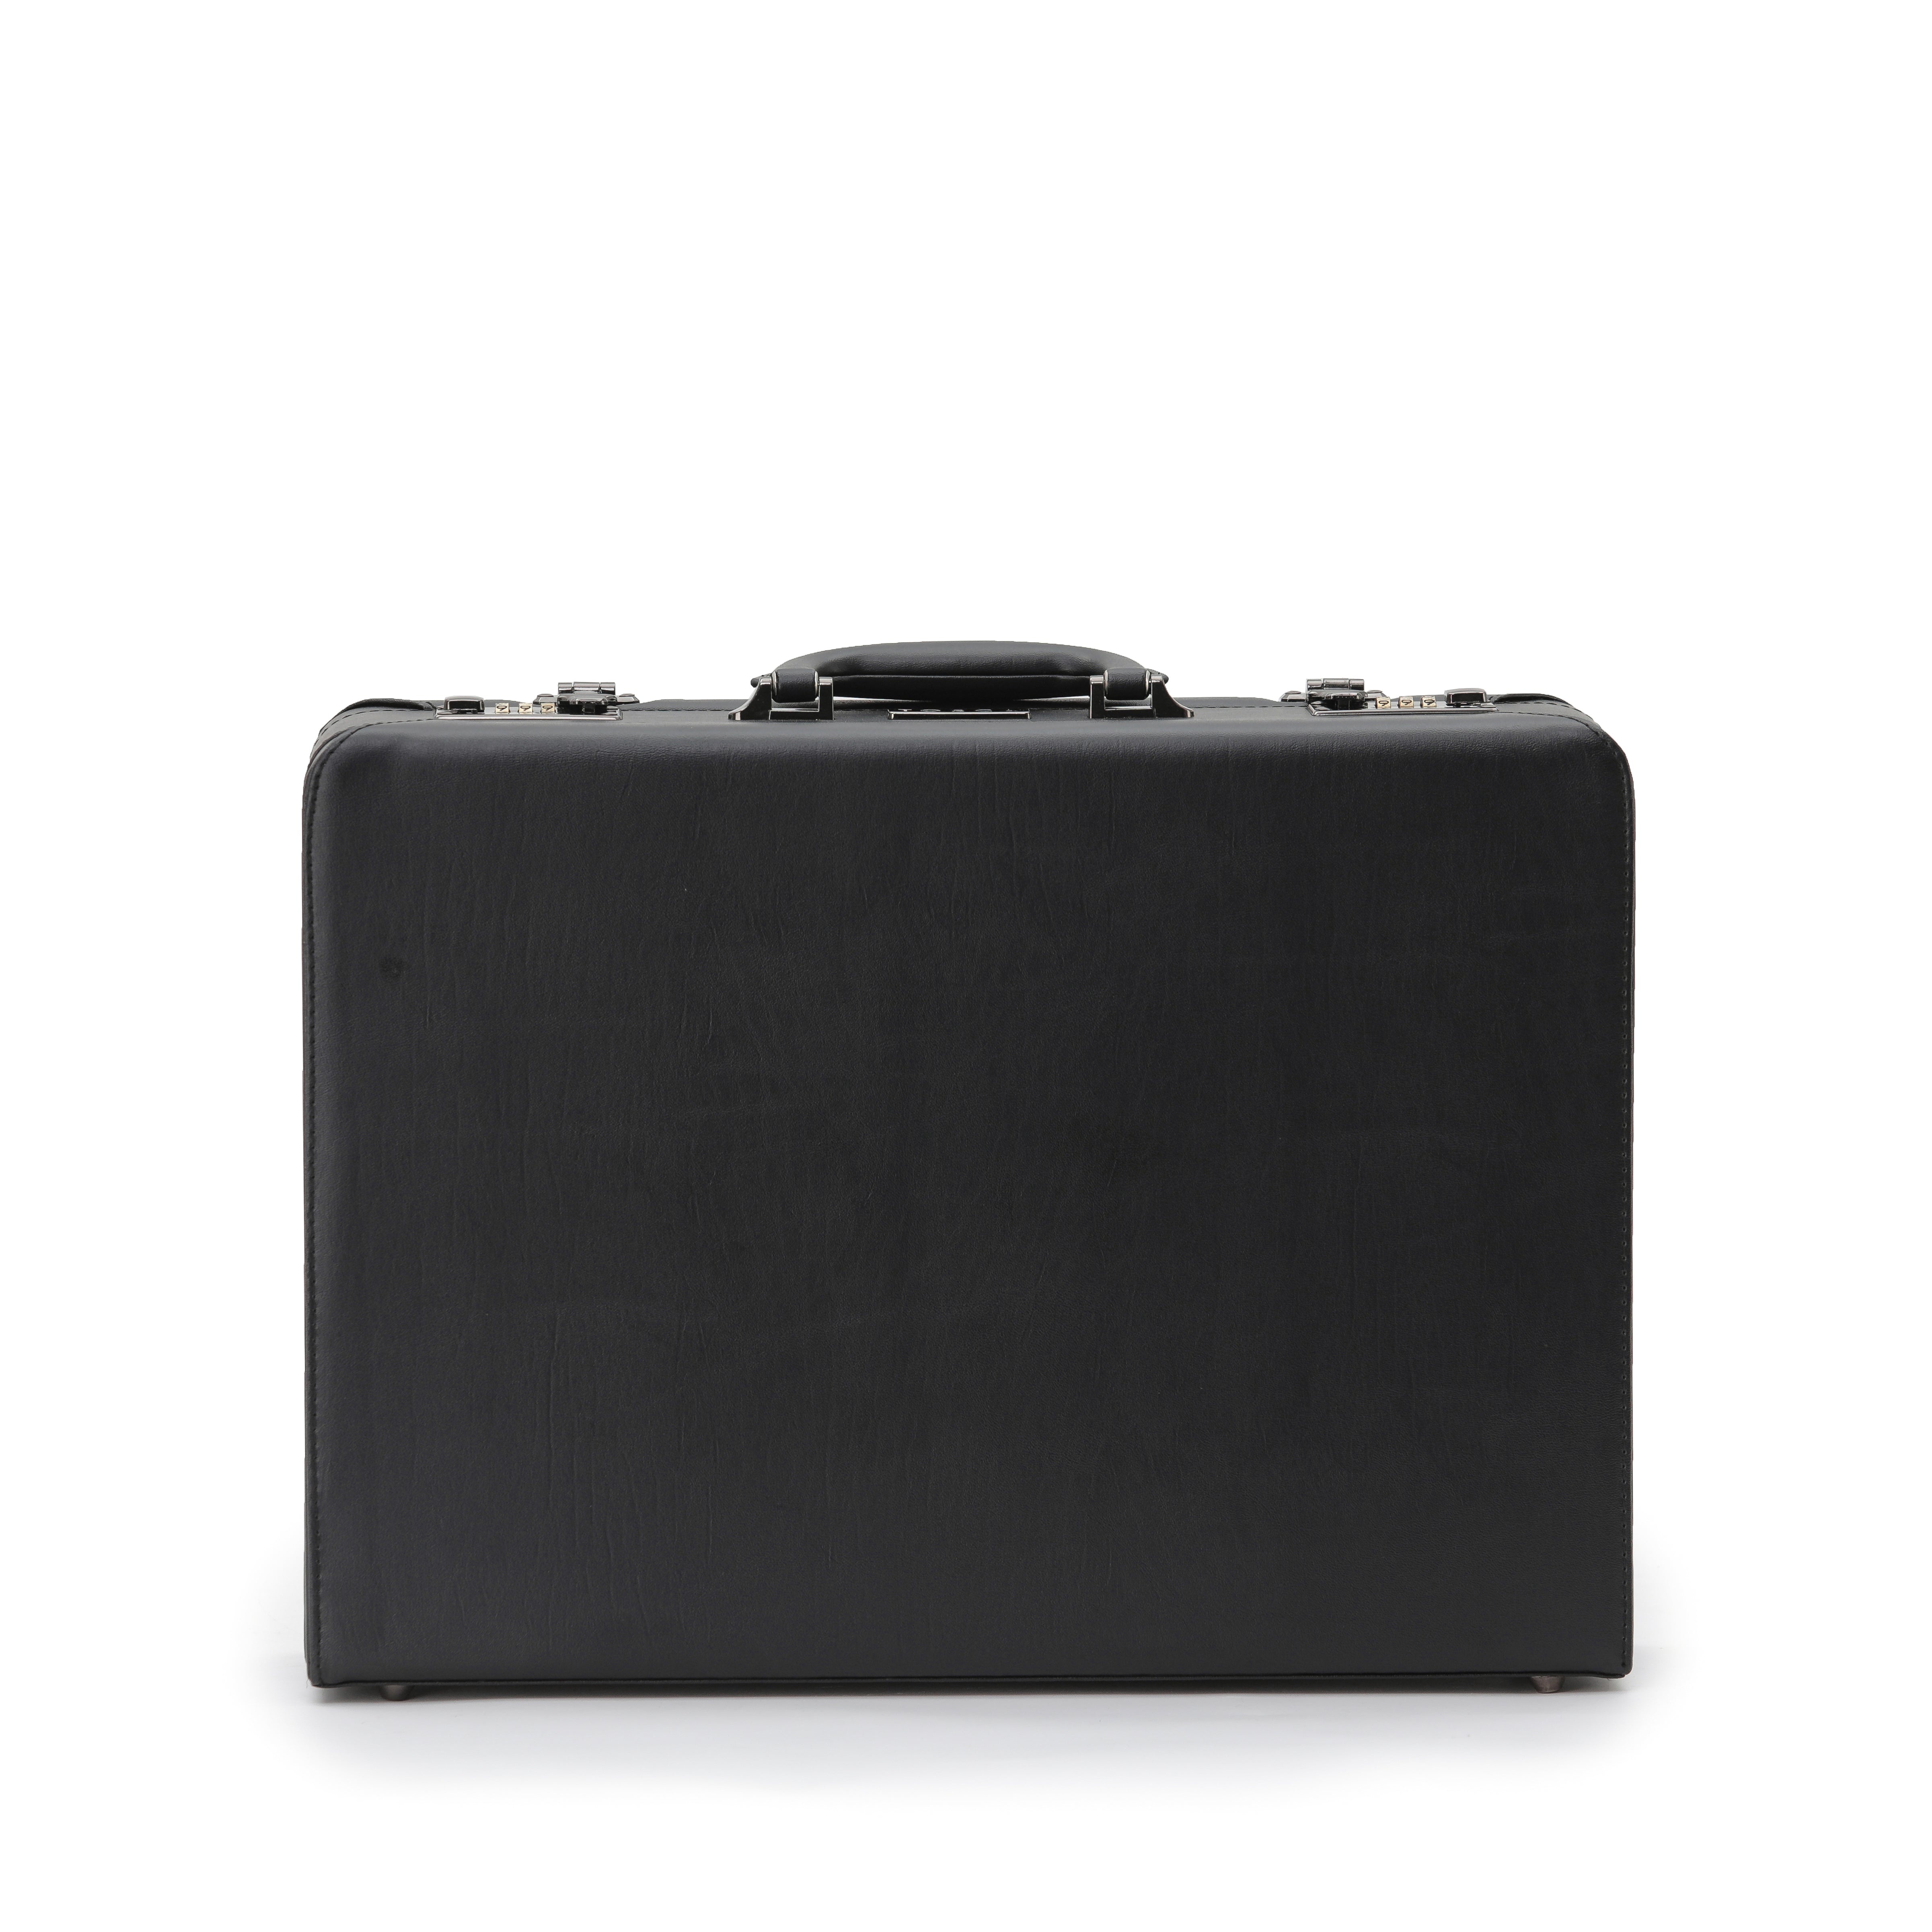 Tosca - TCA2605 attache briefcase - Black-1